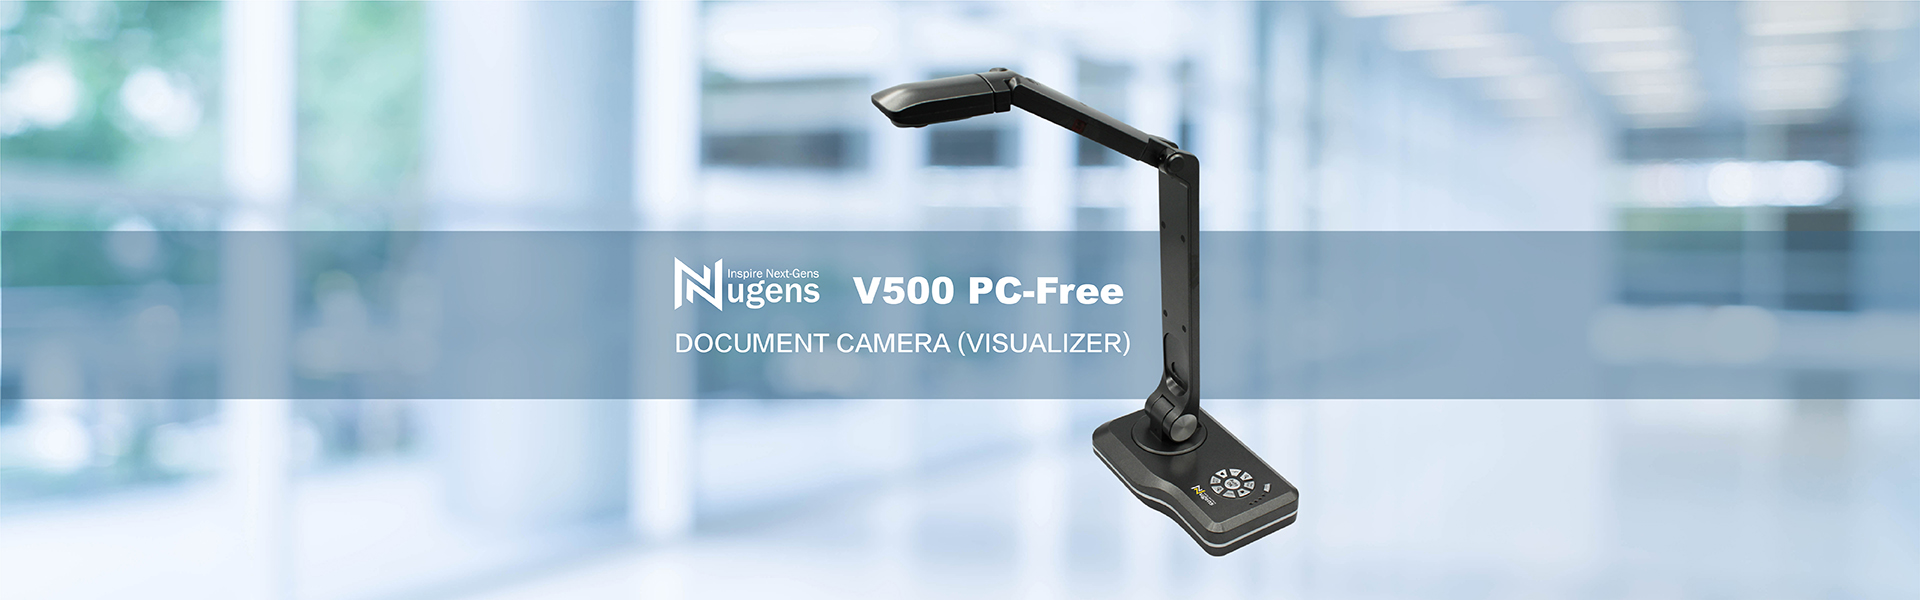 V500 PC-Free